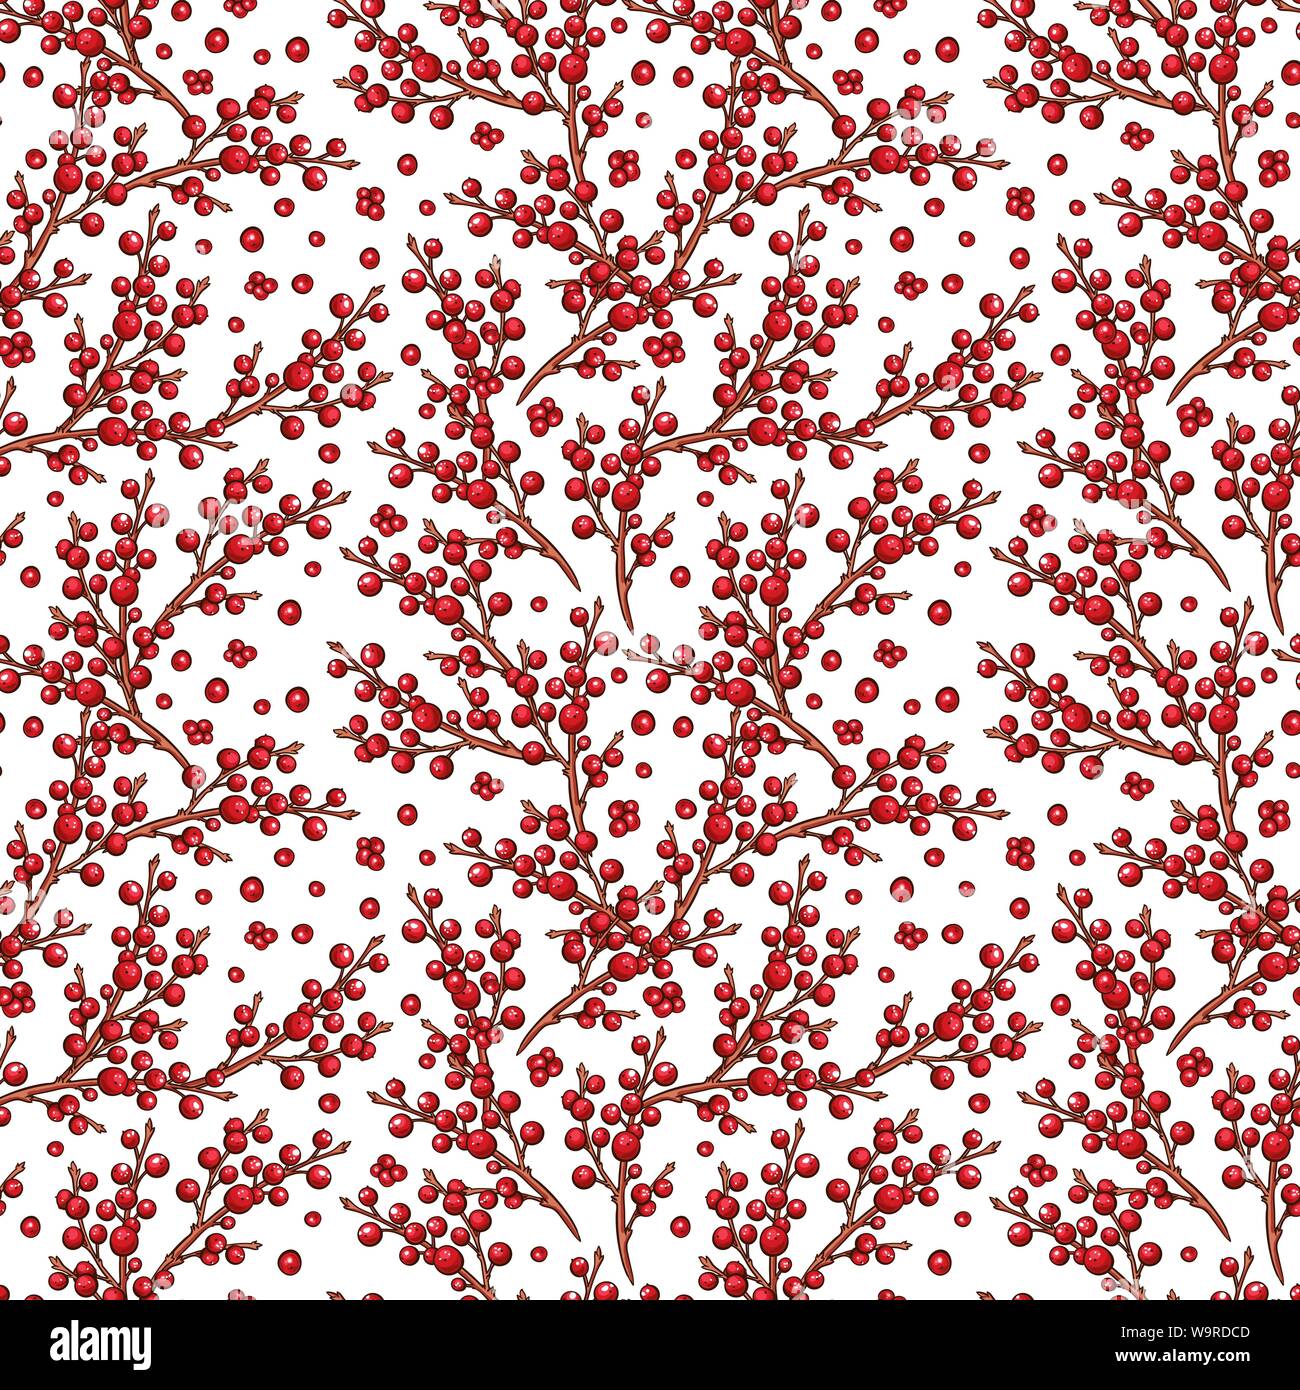 Rote Europäische Stechpalme (Ilex) Beeren nahtlose Vektor Muster. Weihnachten scrapbooking oder Hintergrund Design mit floralen Filialen. Vinter handdrawn Marker Abbildung Stock Vektor